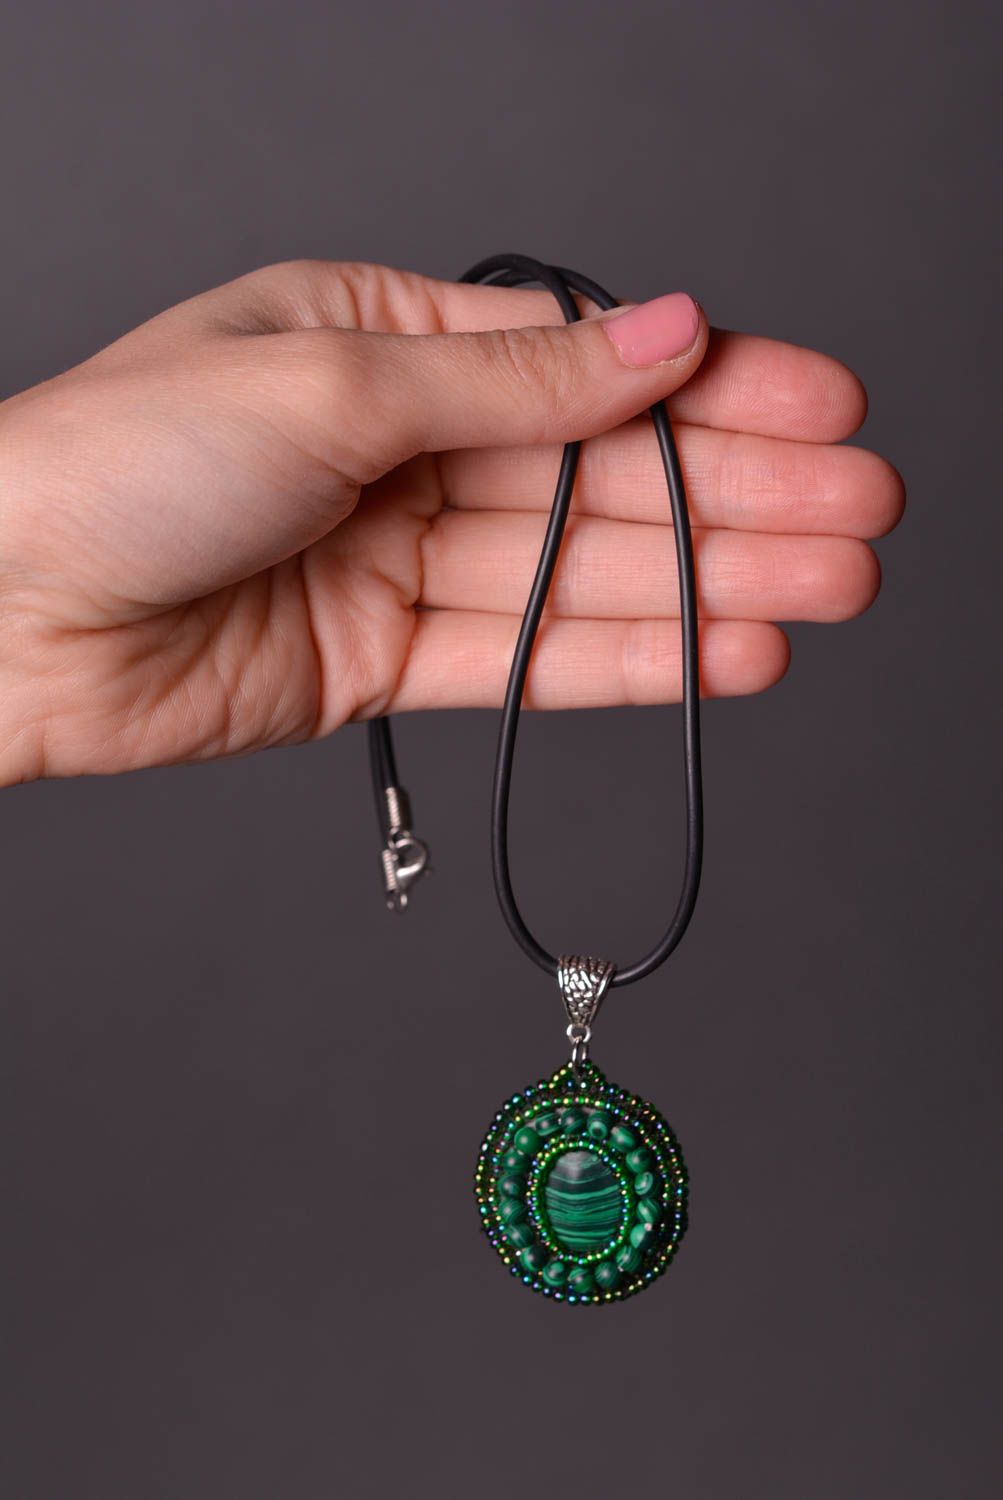 Украшение ручной работы кулон из натурального камня зеленое авторское украшение фото 2